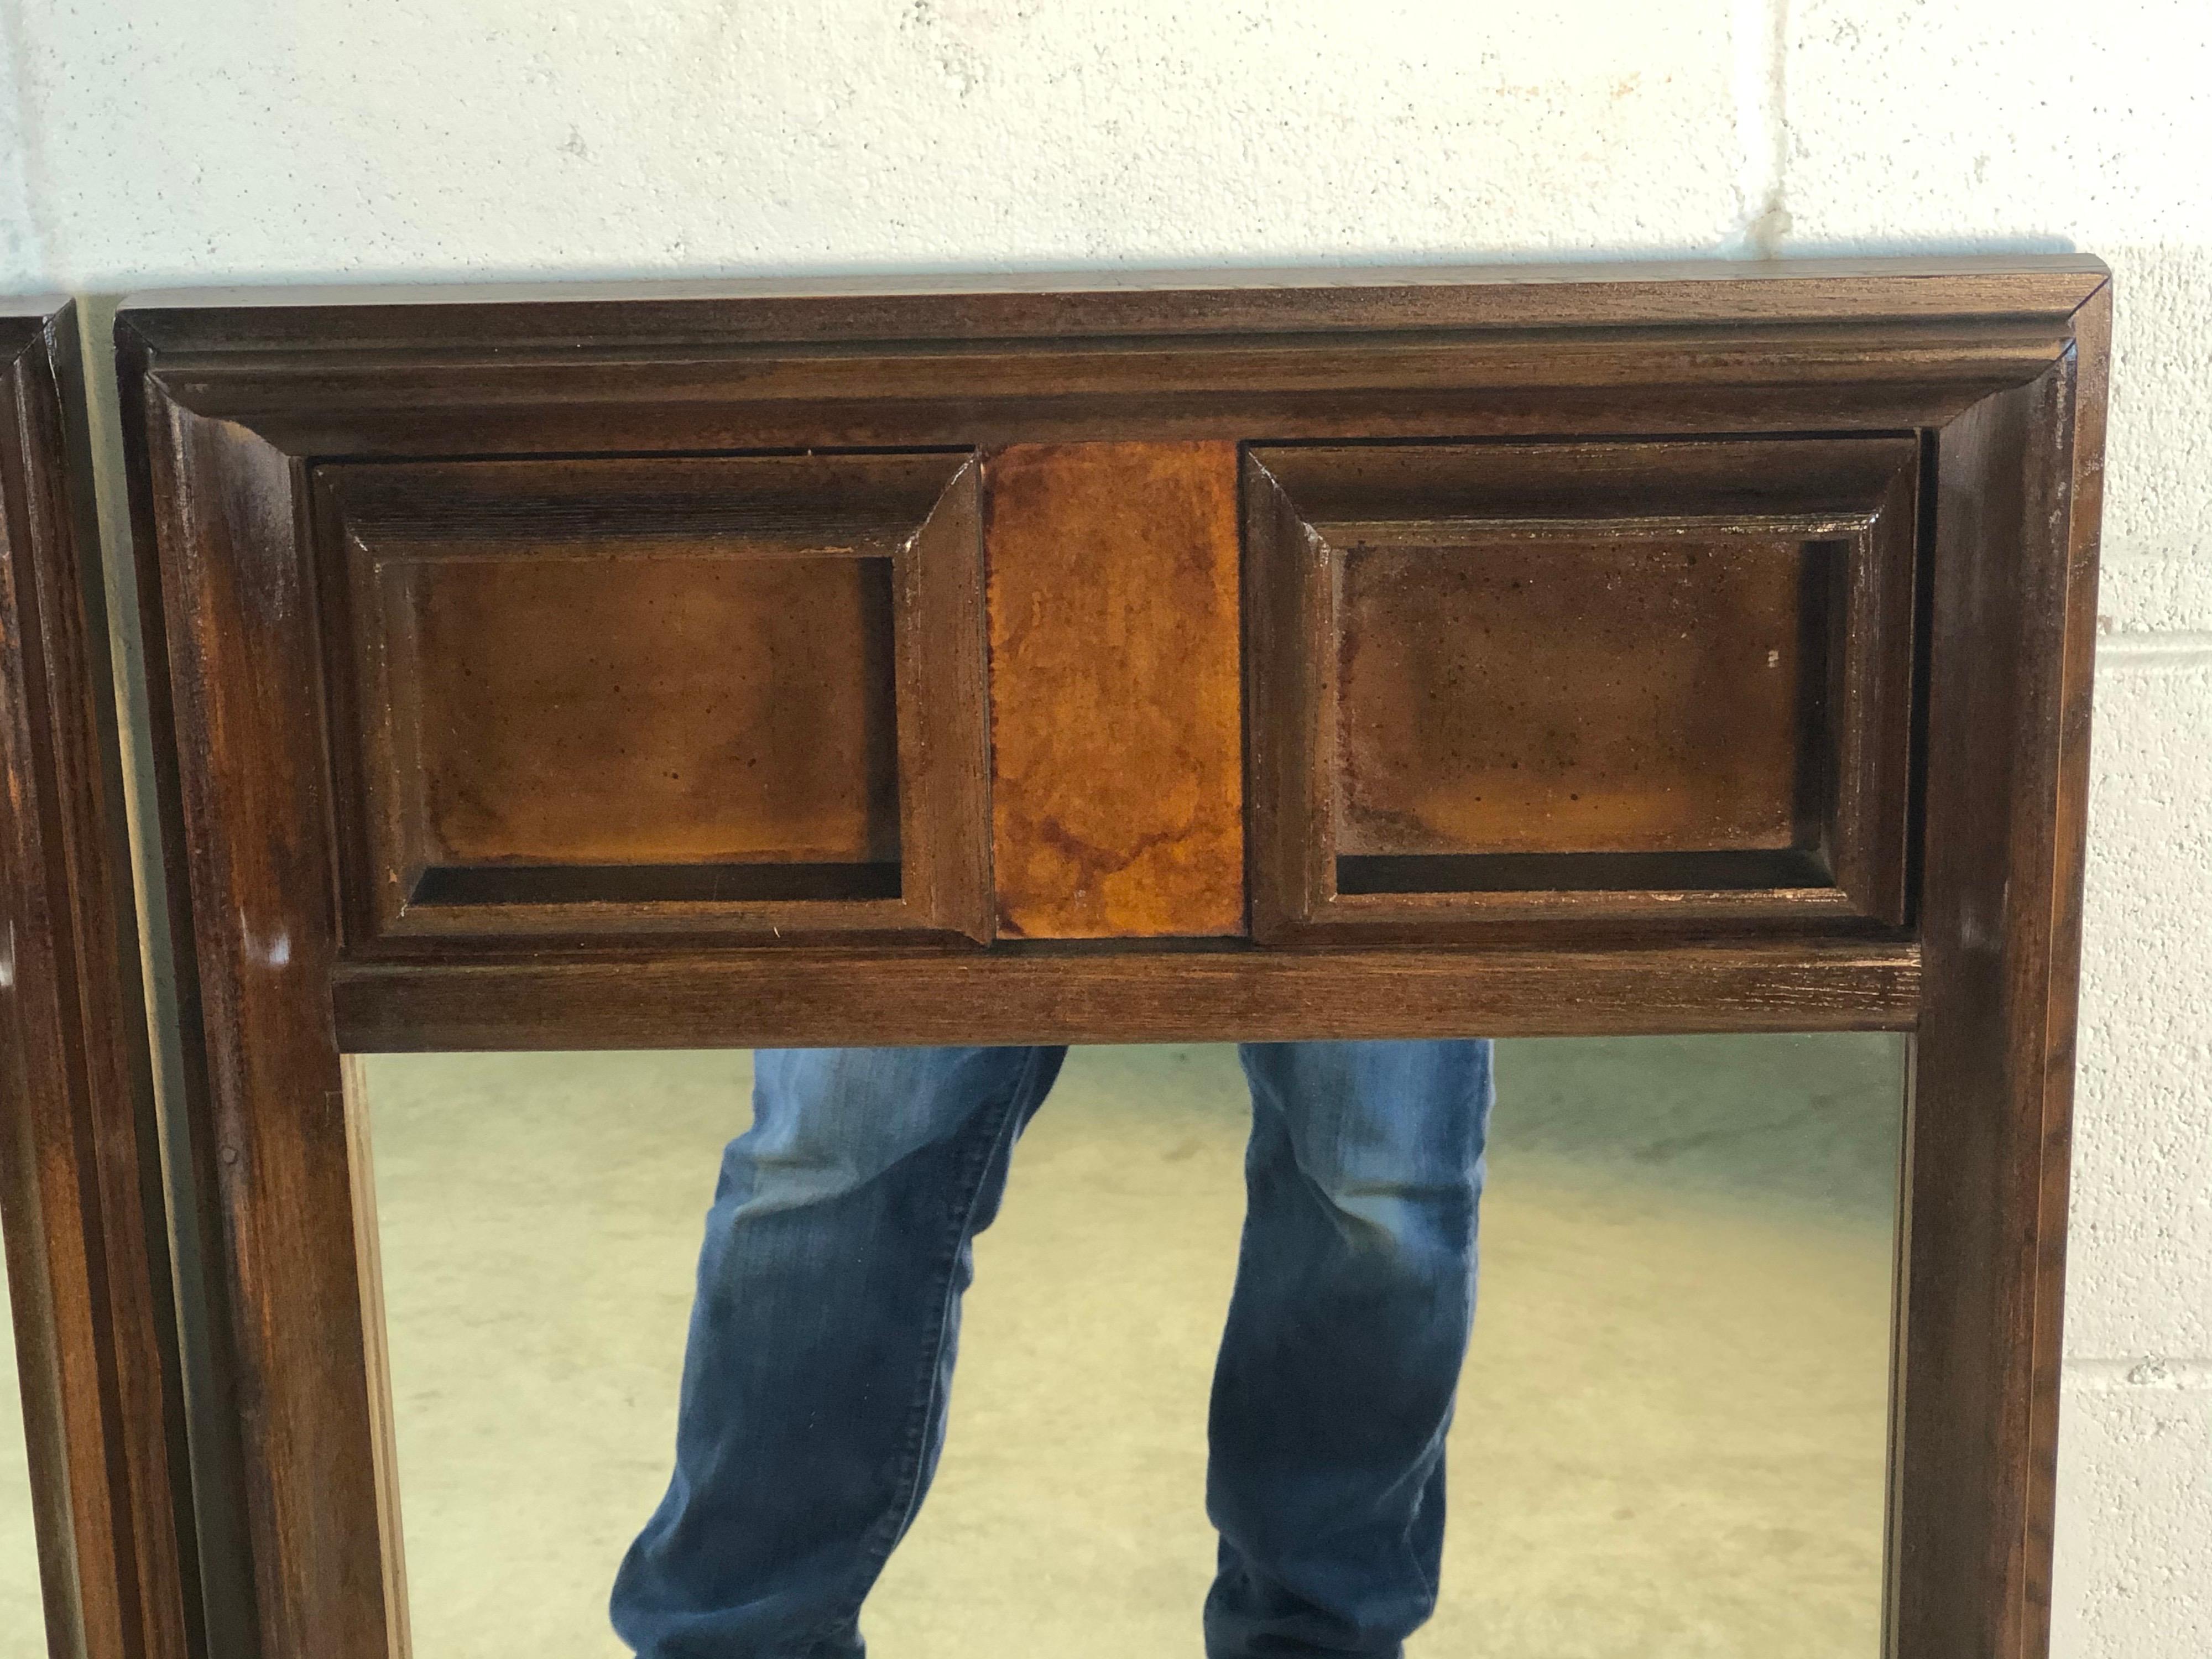 wood wall mirror